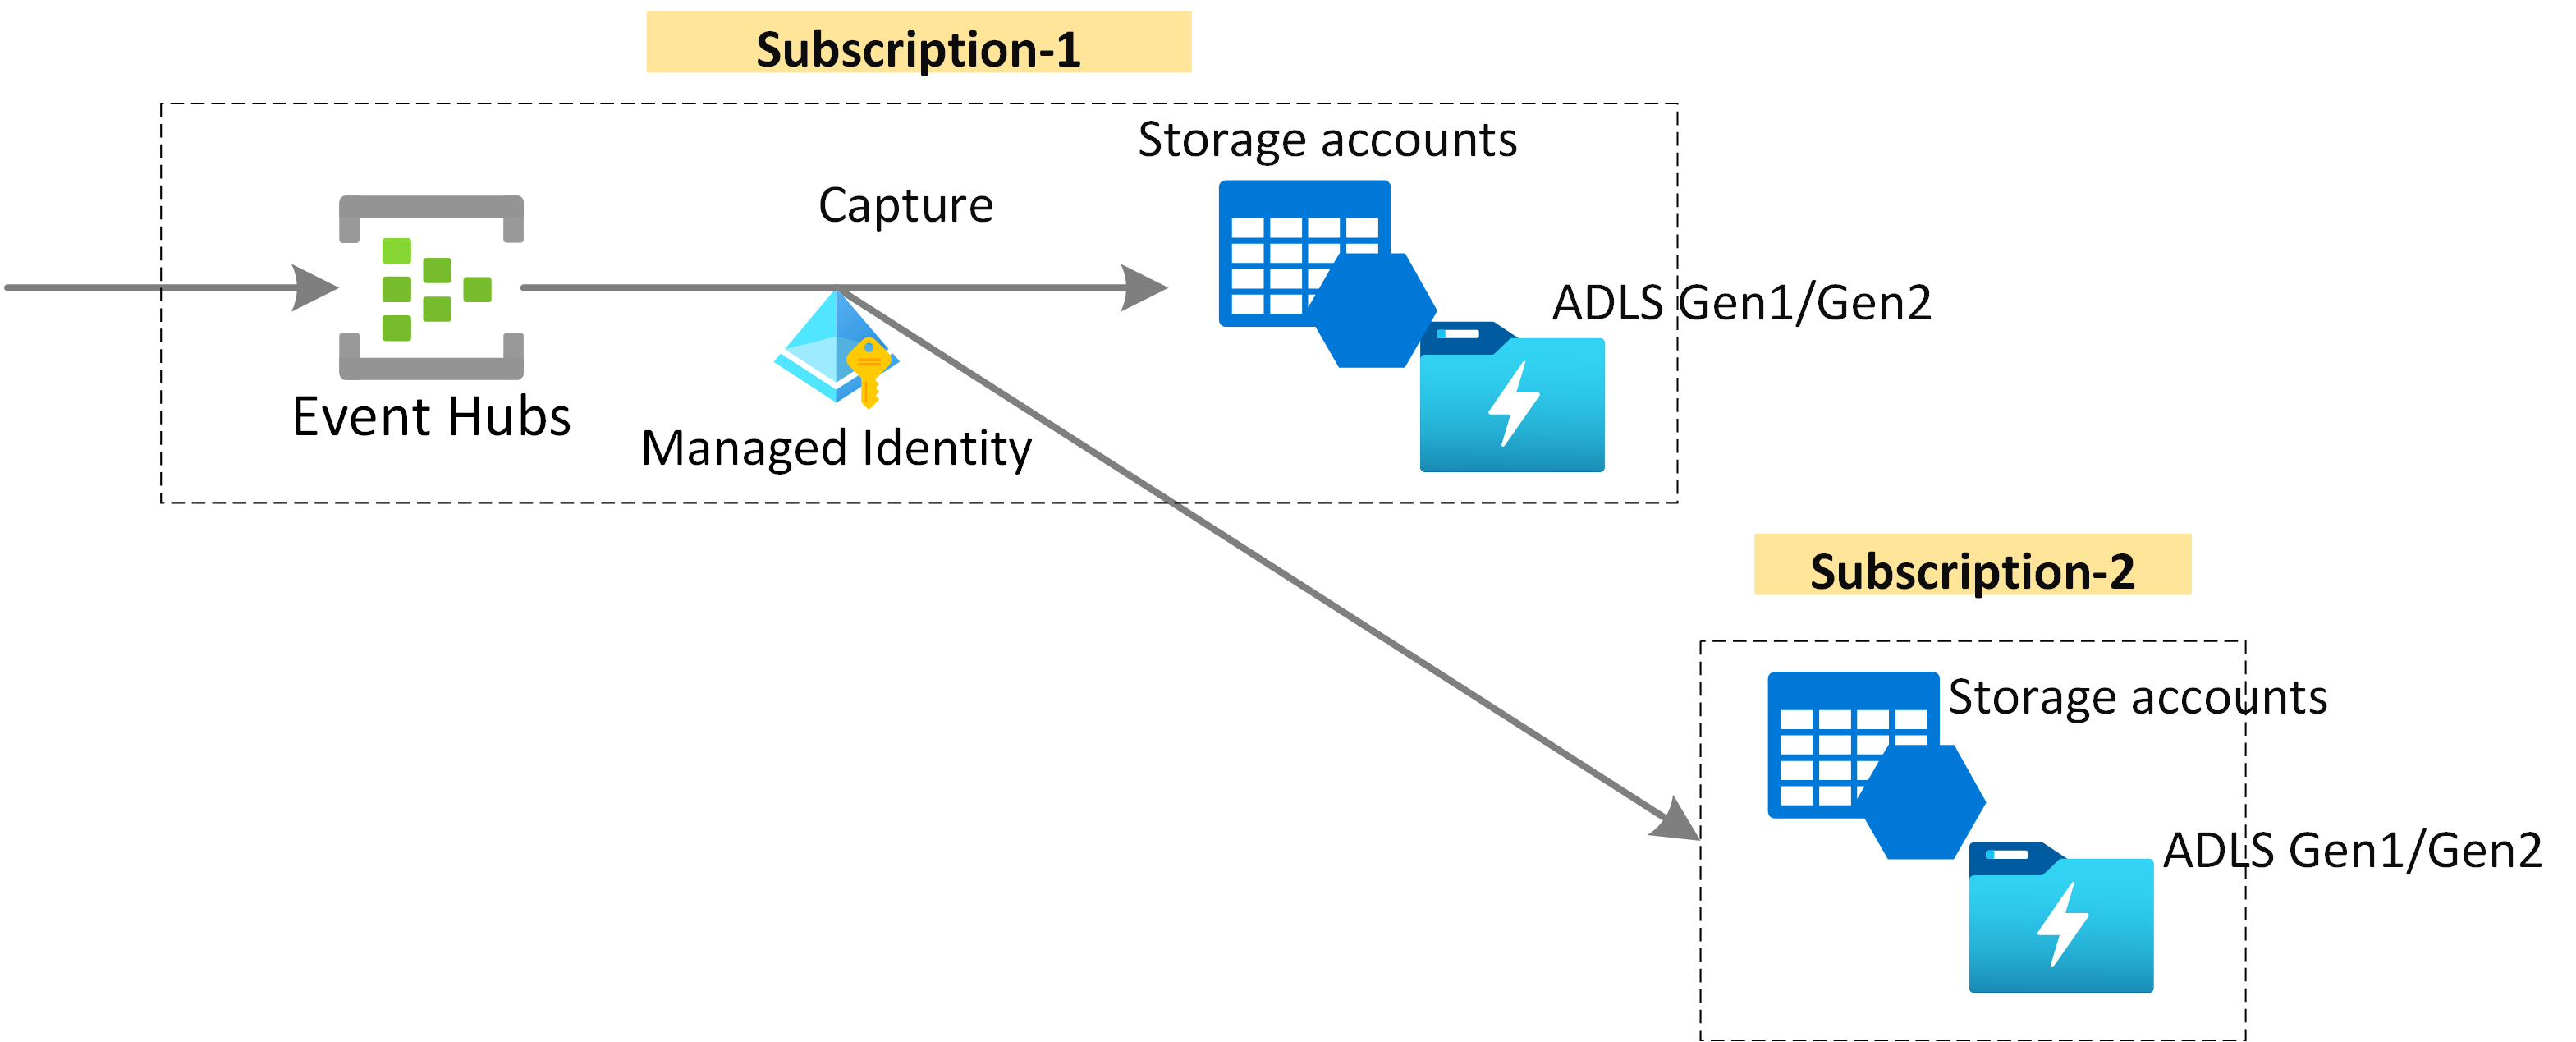 Diagramm: Erfassen von Event Hubs-Daten in Azure Storage oder Azure Data Lake Storage mithilfe von Managed Identity